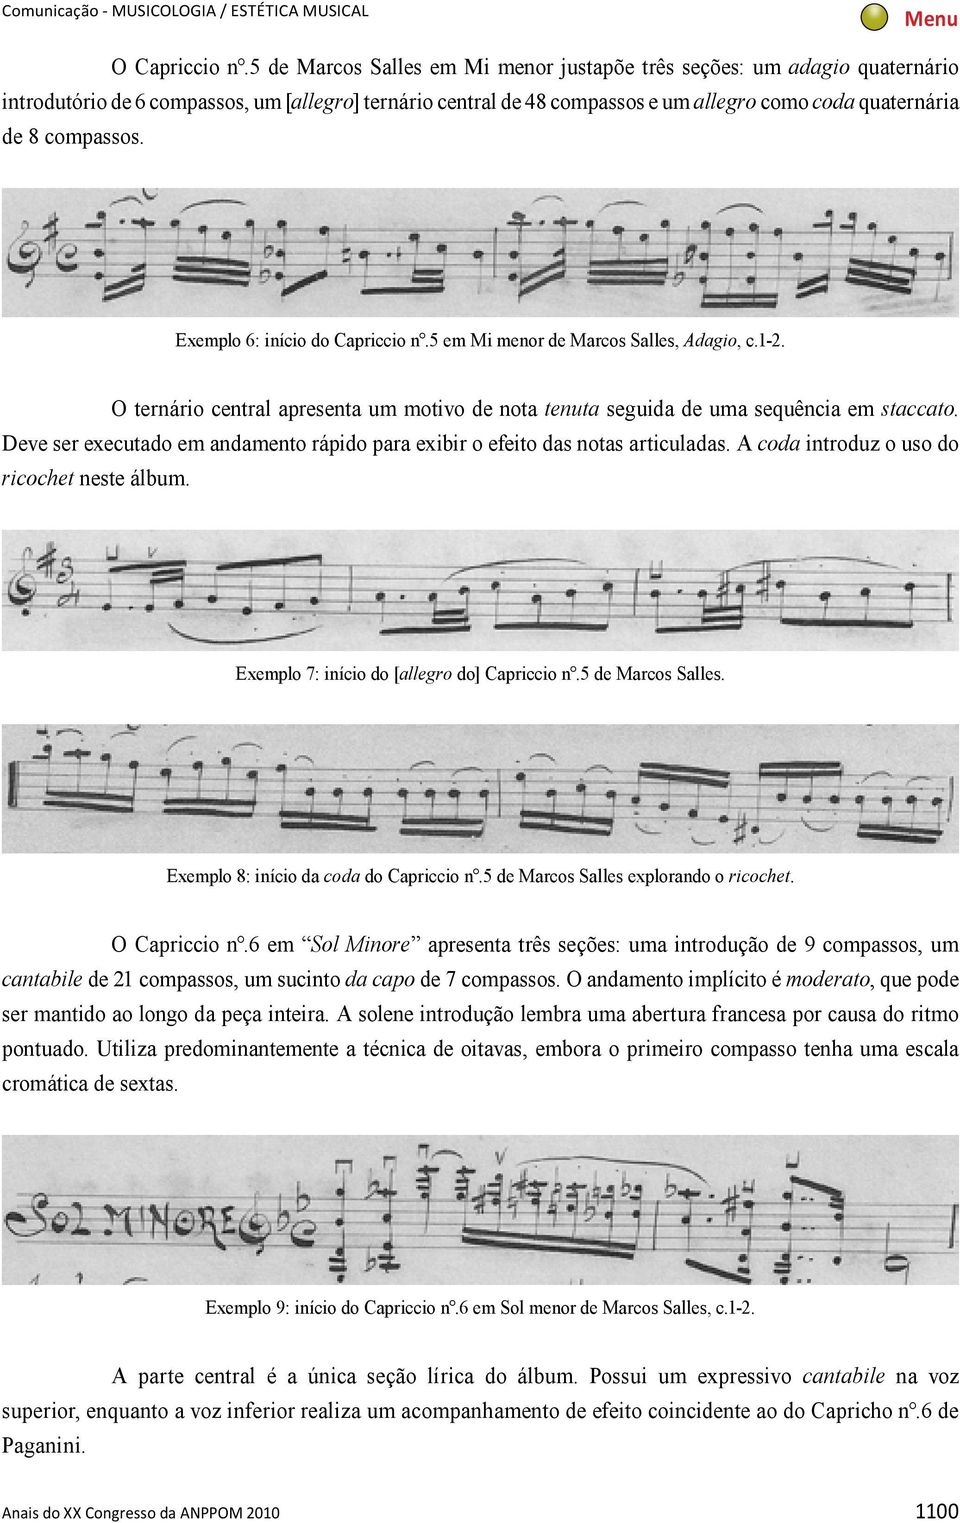 Exemplo 6: início do Capriccio n.5 em Mi menor de Marcos Salles, Adagio, c.1-2. O ternário central apresenta um motivo de nota tenuta seguida de uma sequência em staccato.